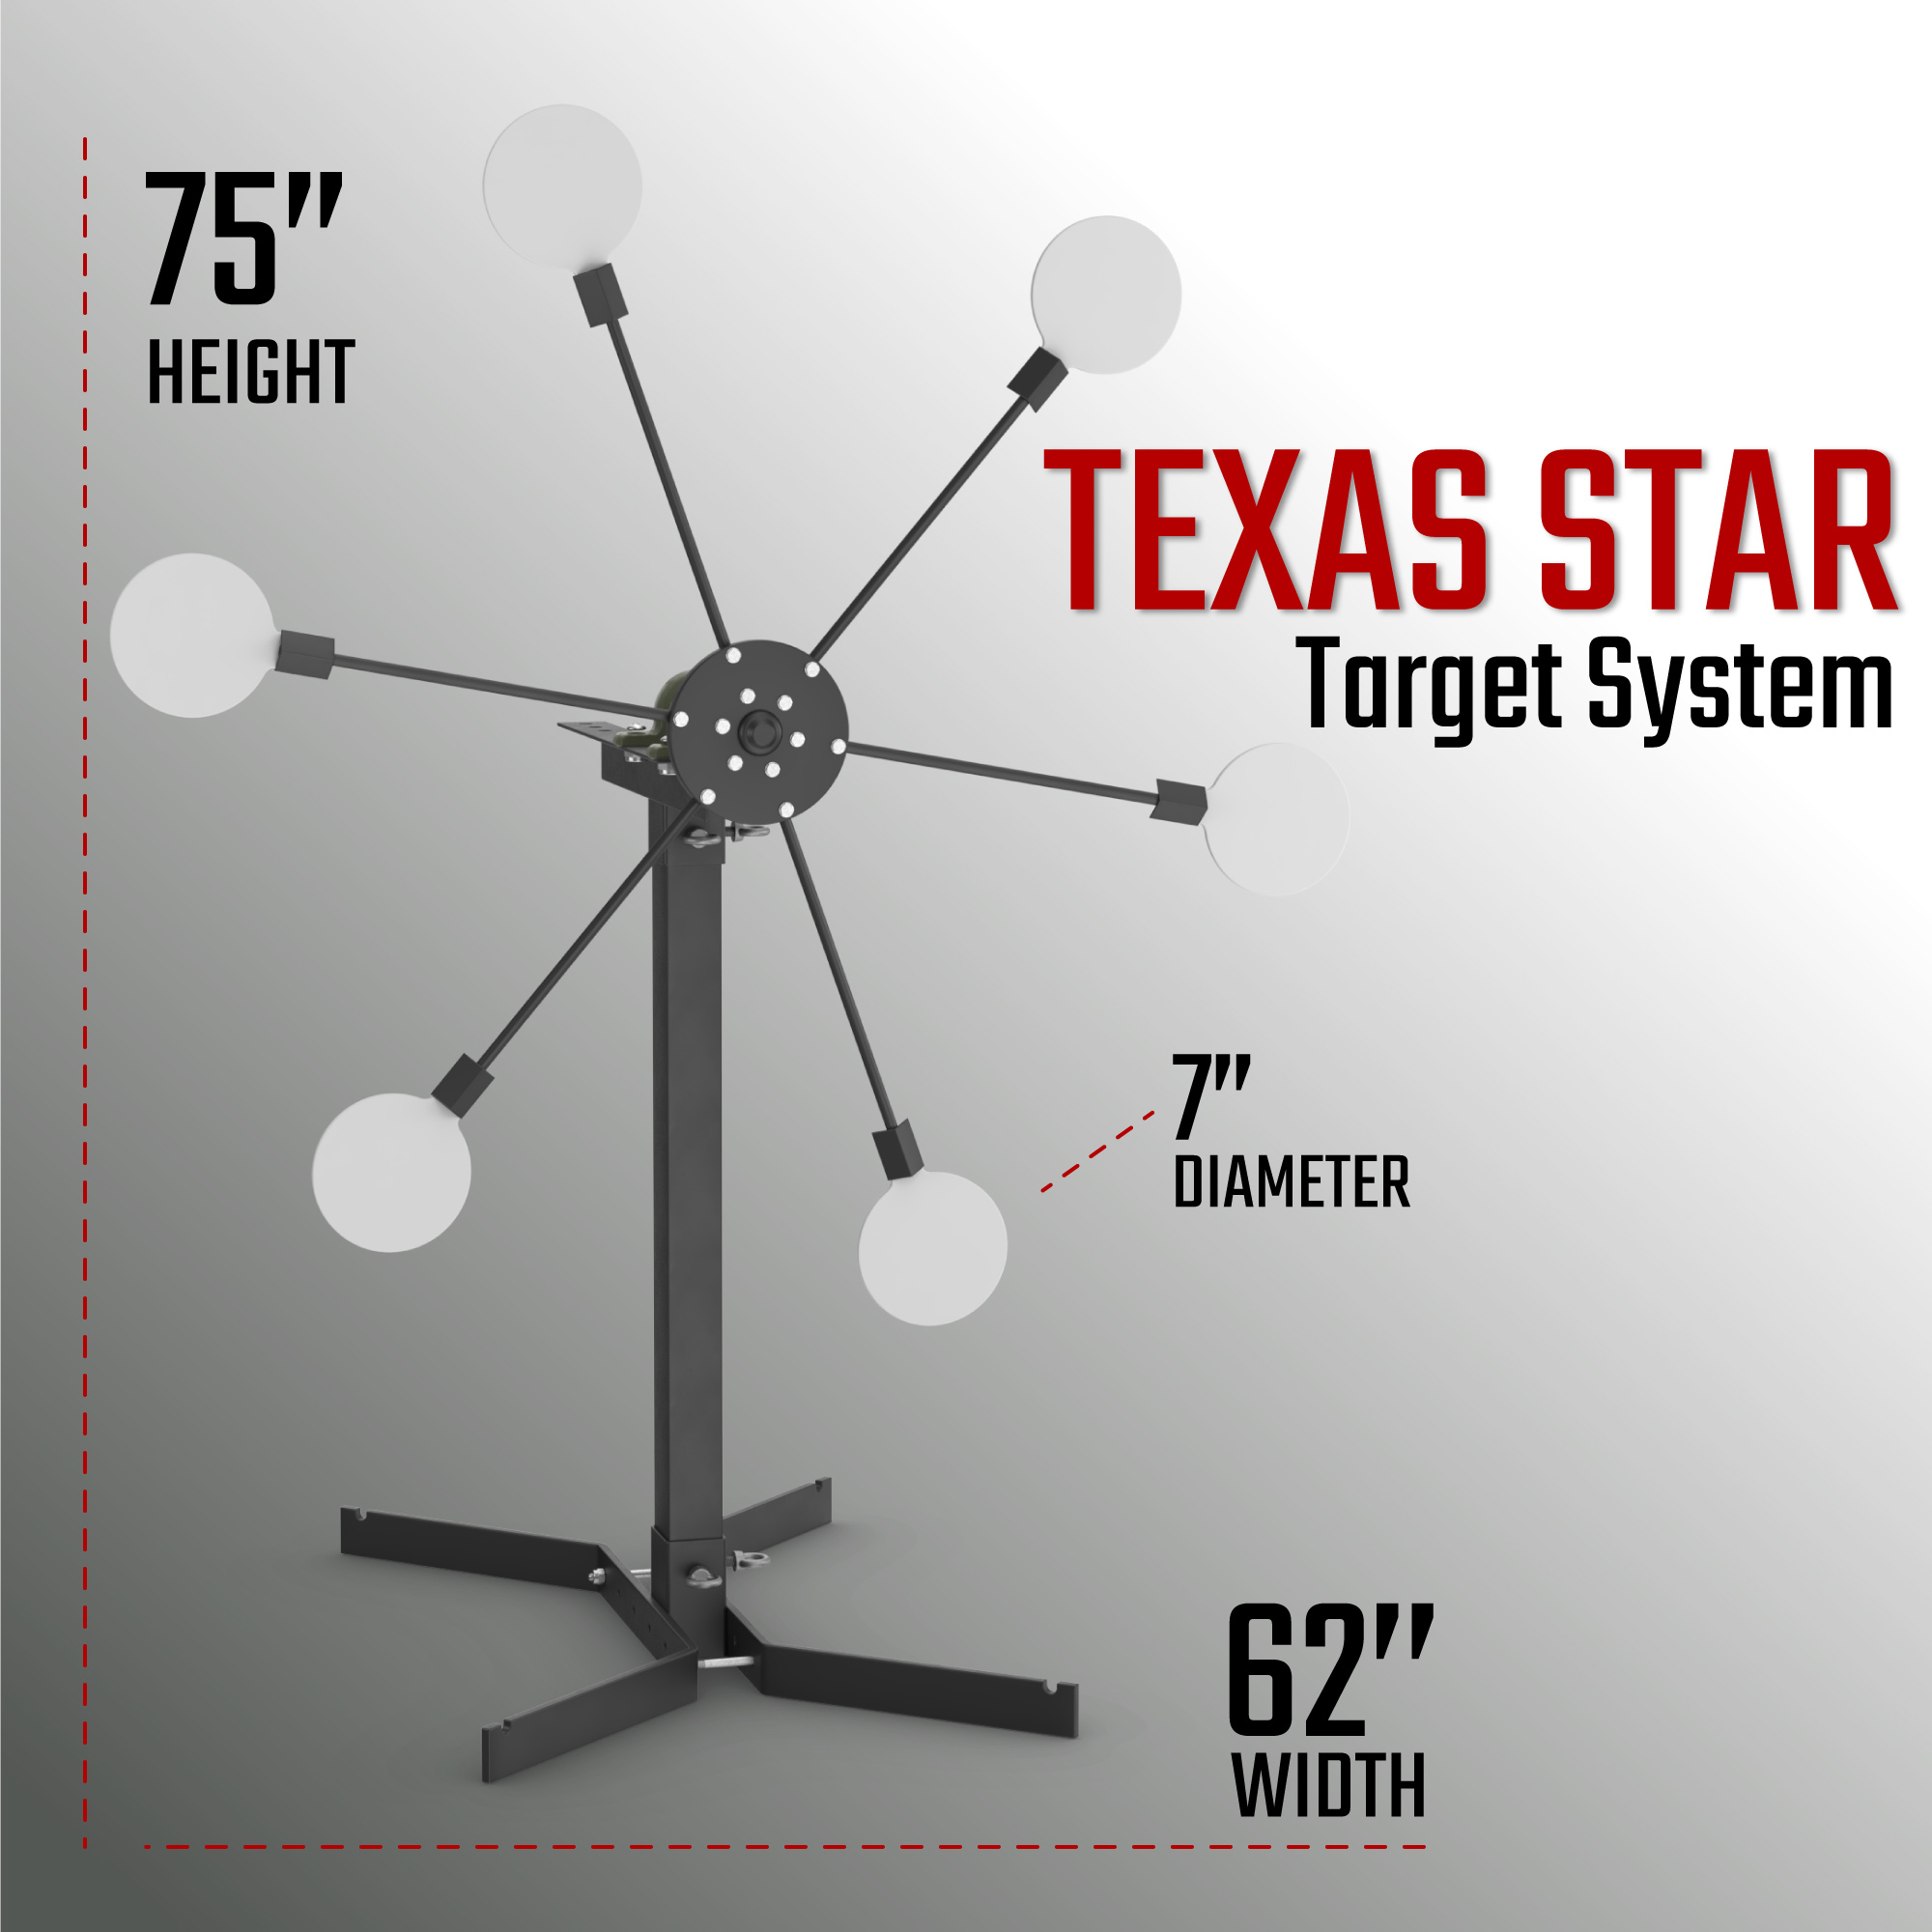 Texas star dims